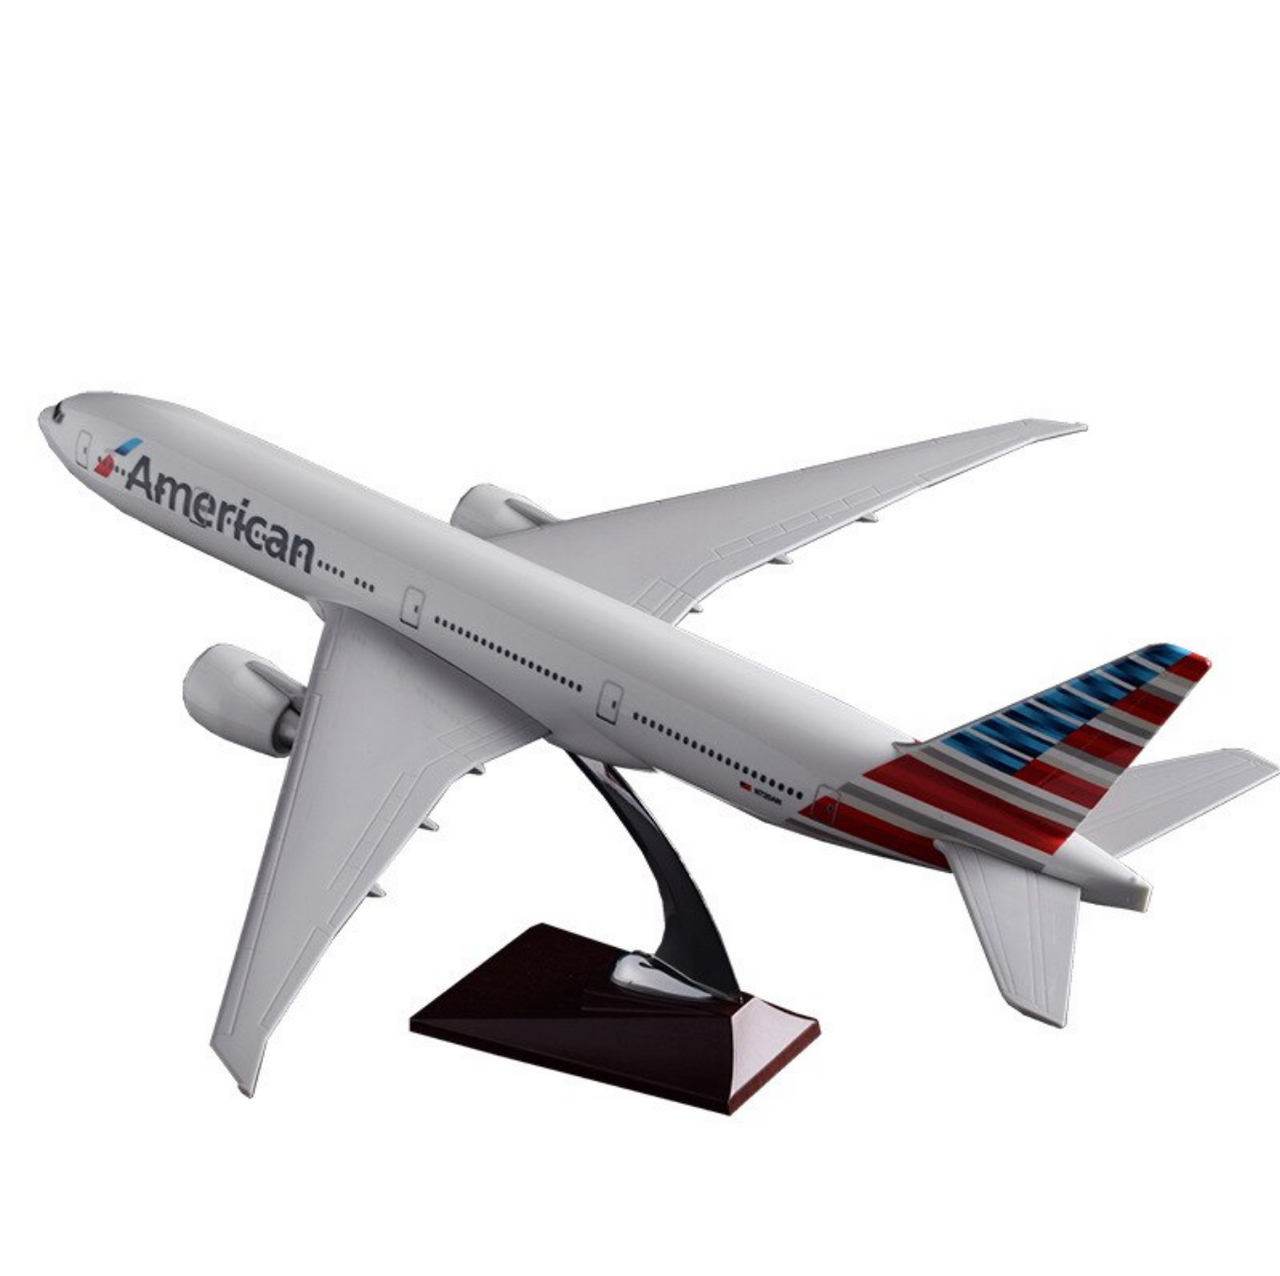 American Airways Boeing 777 Airplane Model (Special Model 47CM)